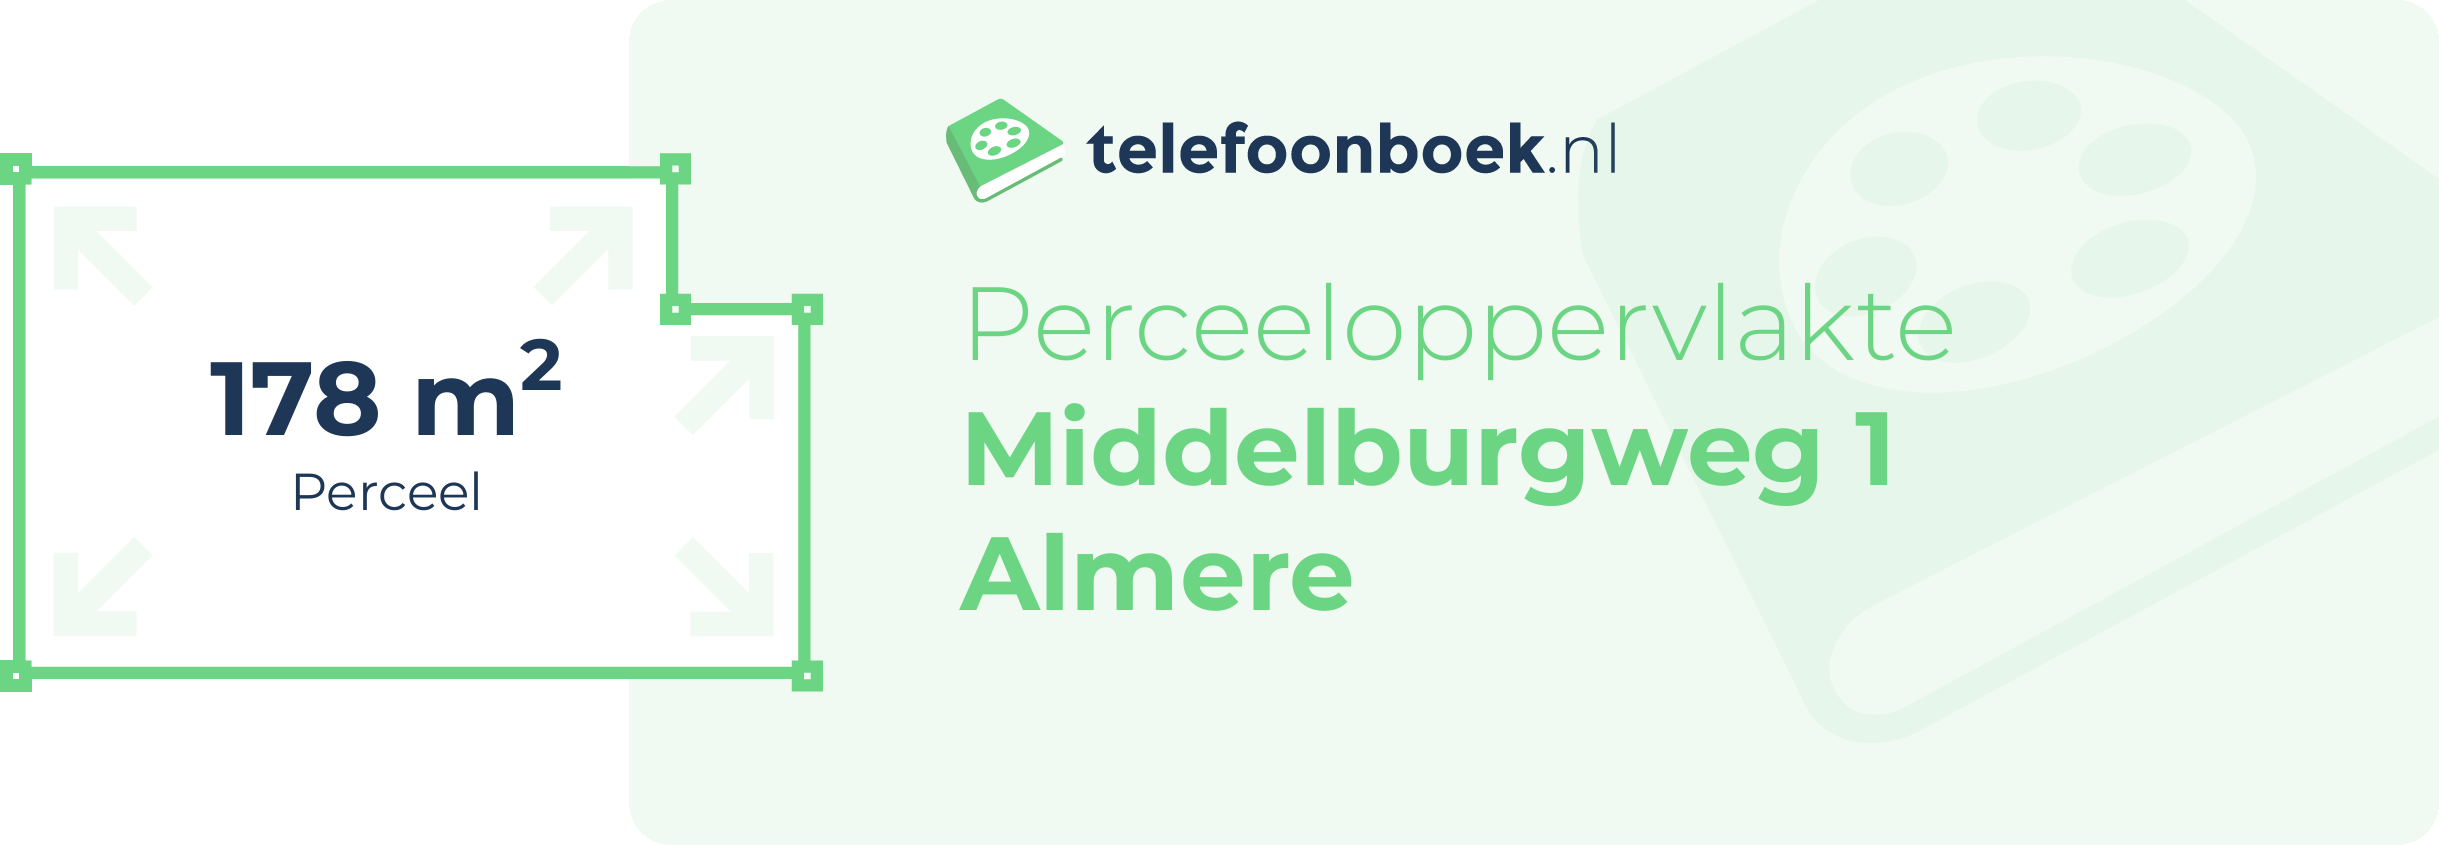 Perceeloppervlakte Middelburgweg 1 Almere